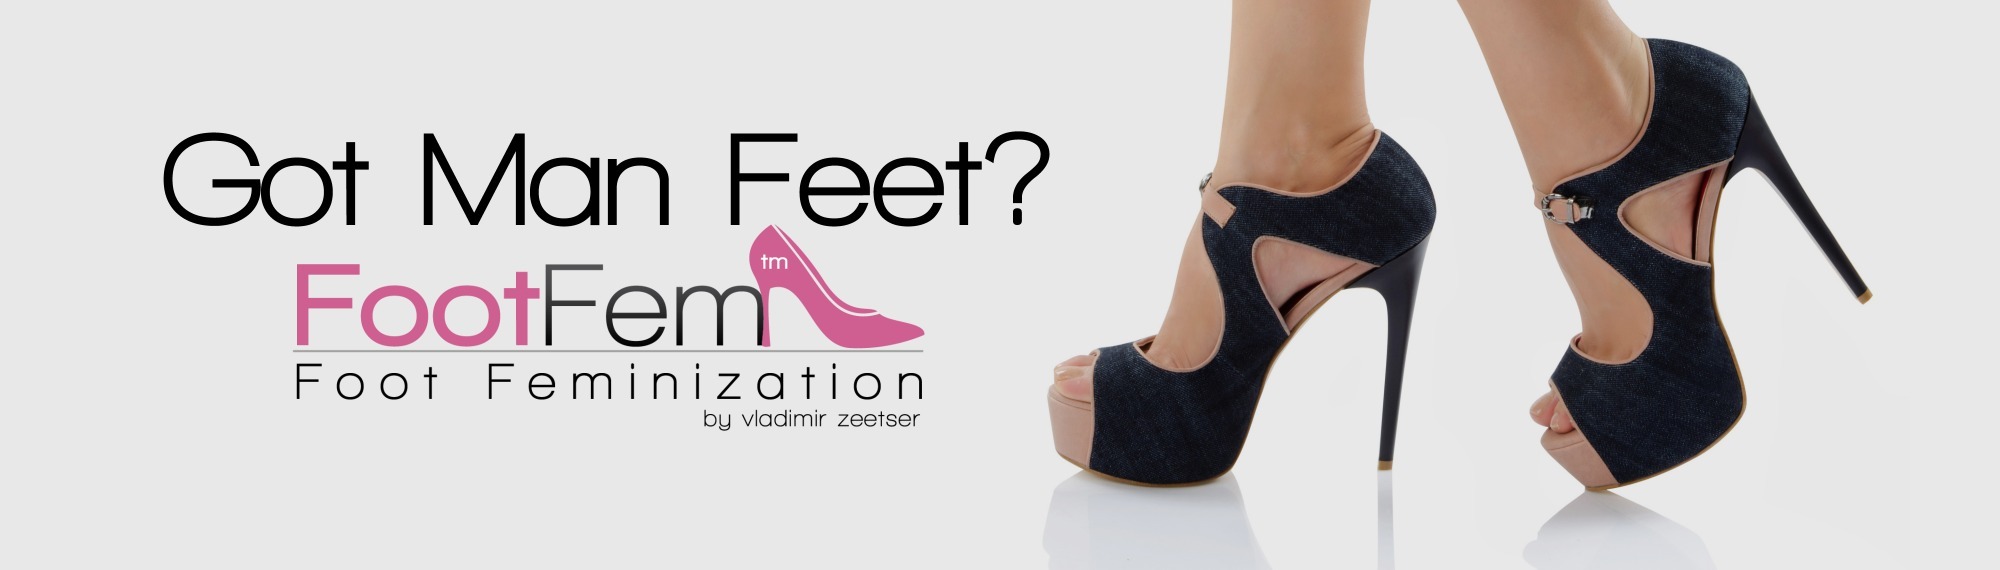 Foot Feminization